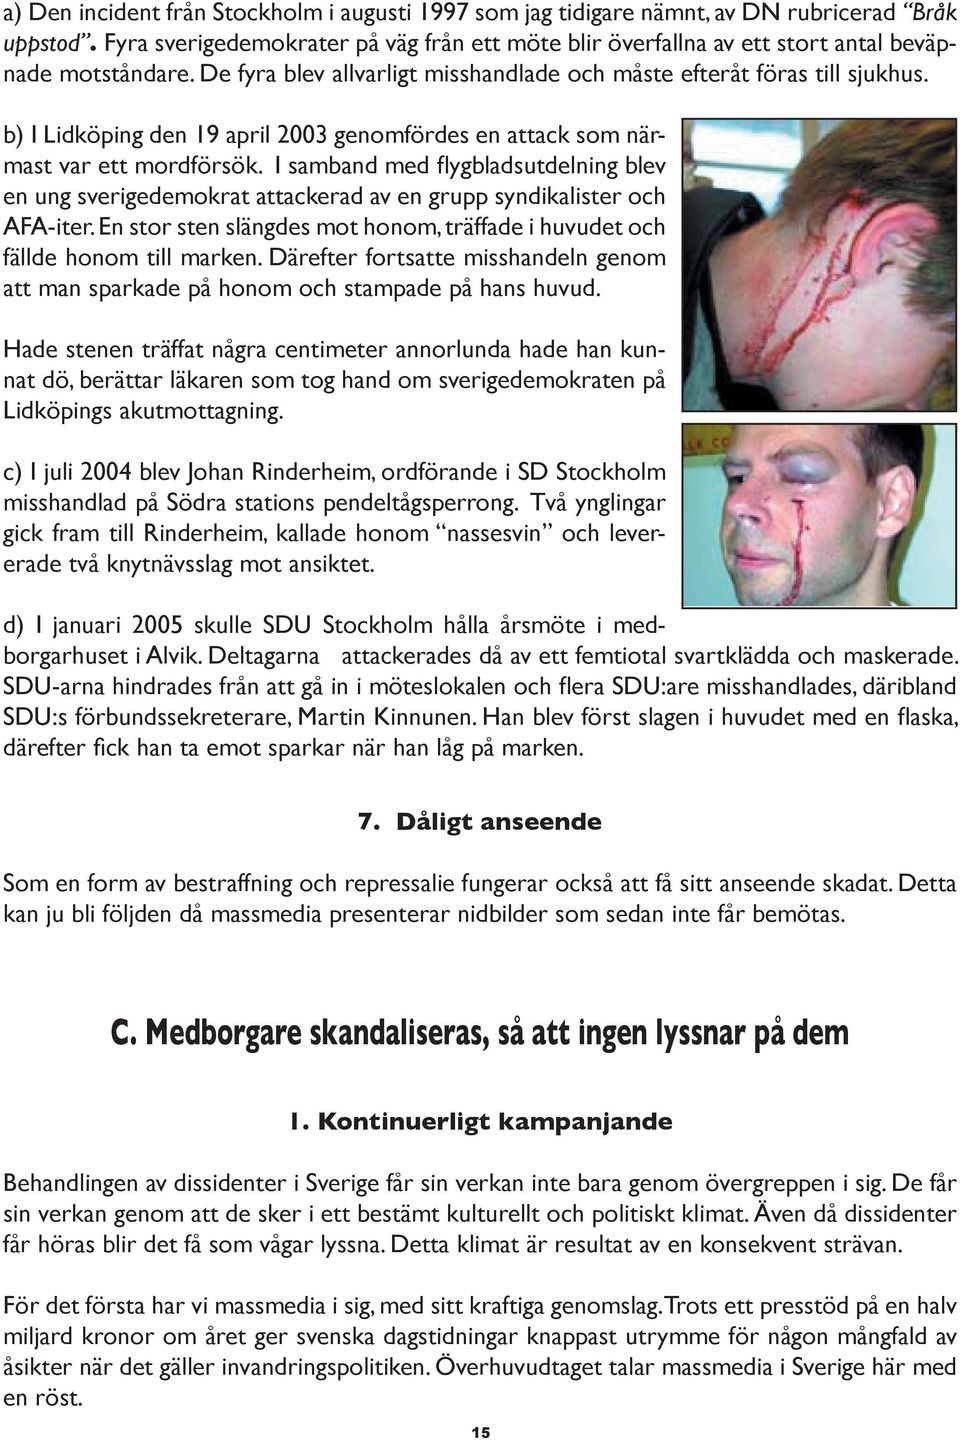 b) I Lidköping den 19 april 2003 genomfördes en attack som närmast var ett mordförsök. I samband med flygbladsutdelning blev en ung sverigedemokrat attackerad av en grupp syndikalister och AFA-iter.